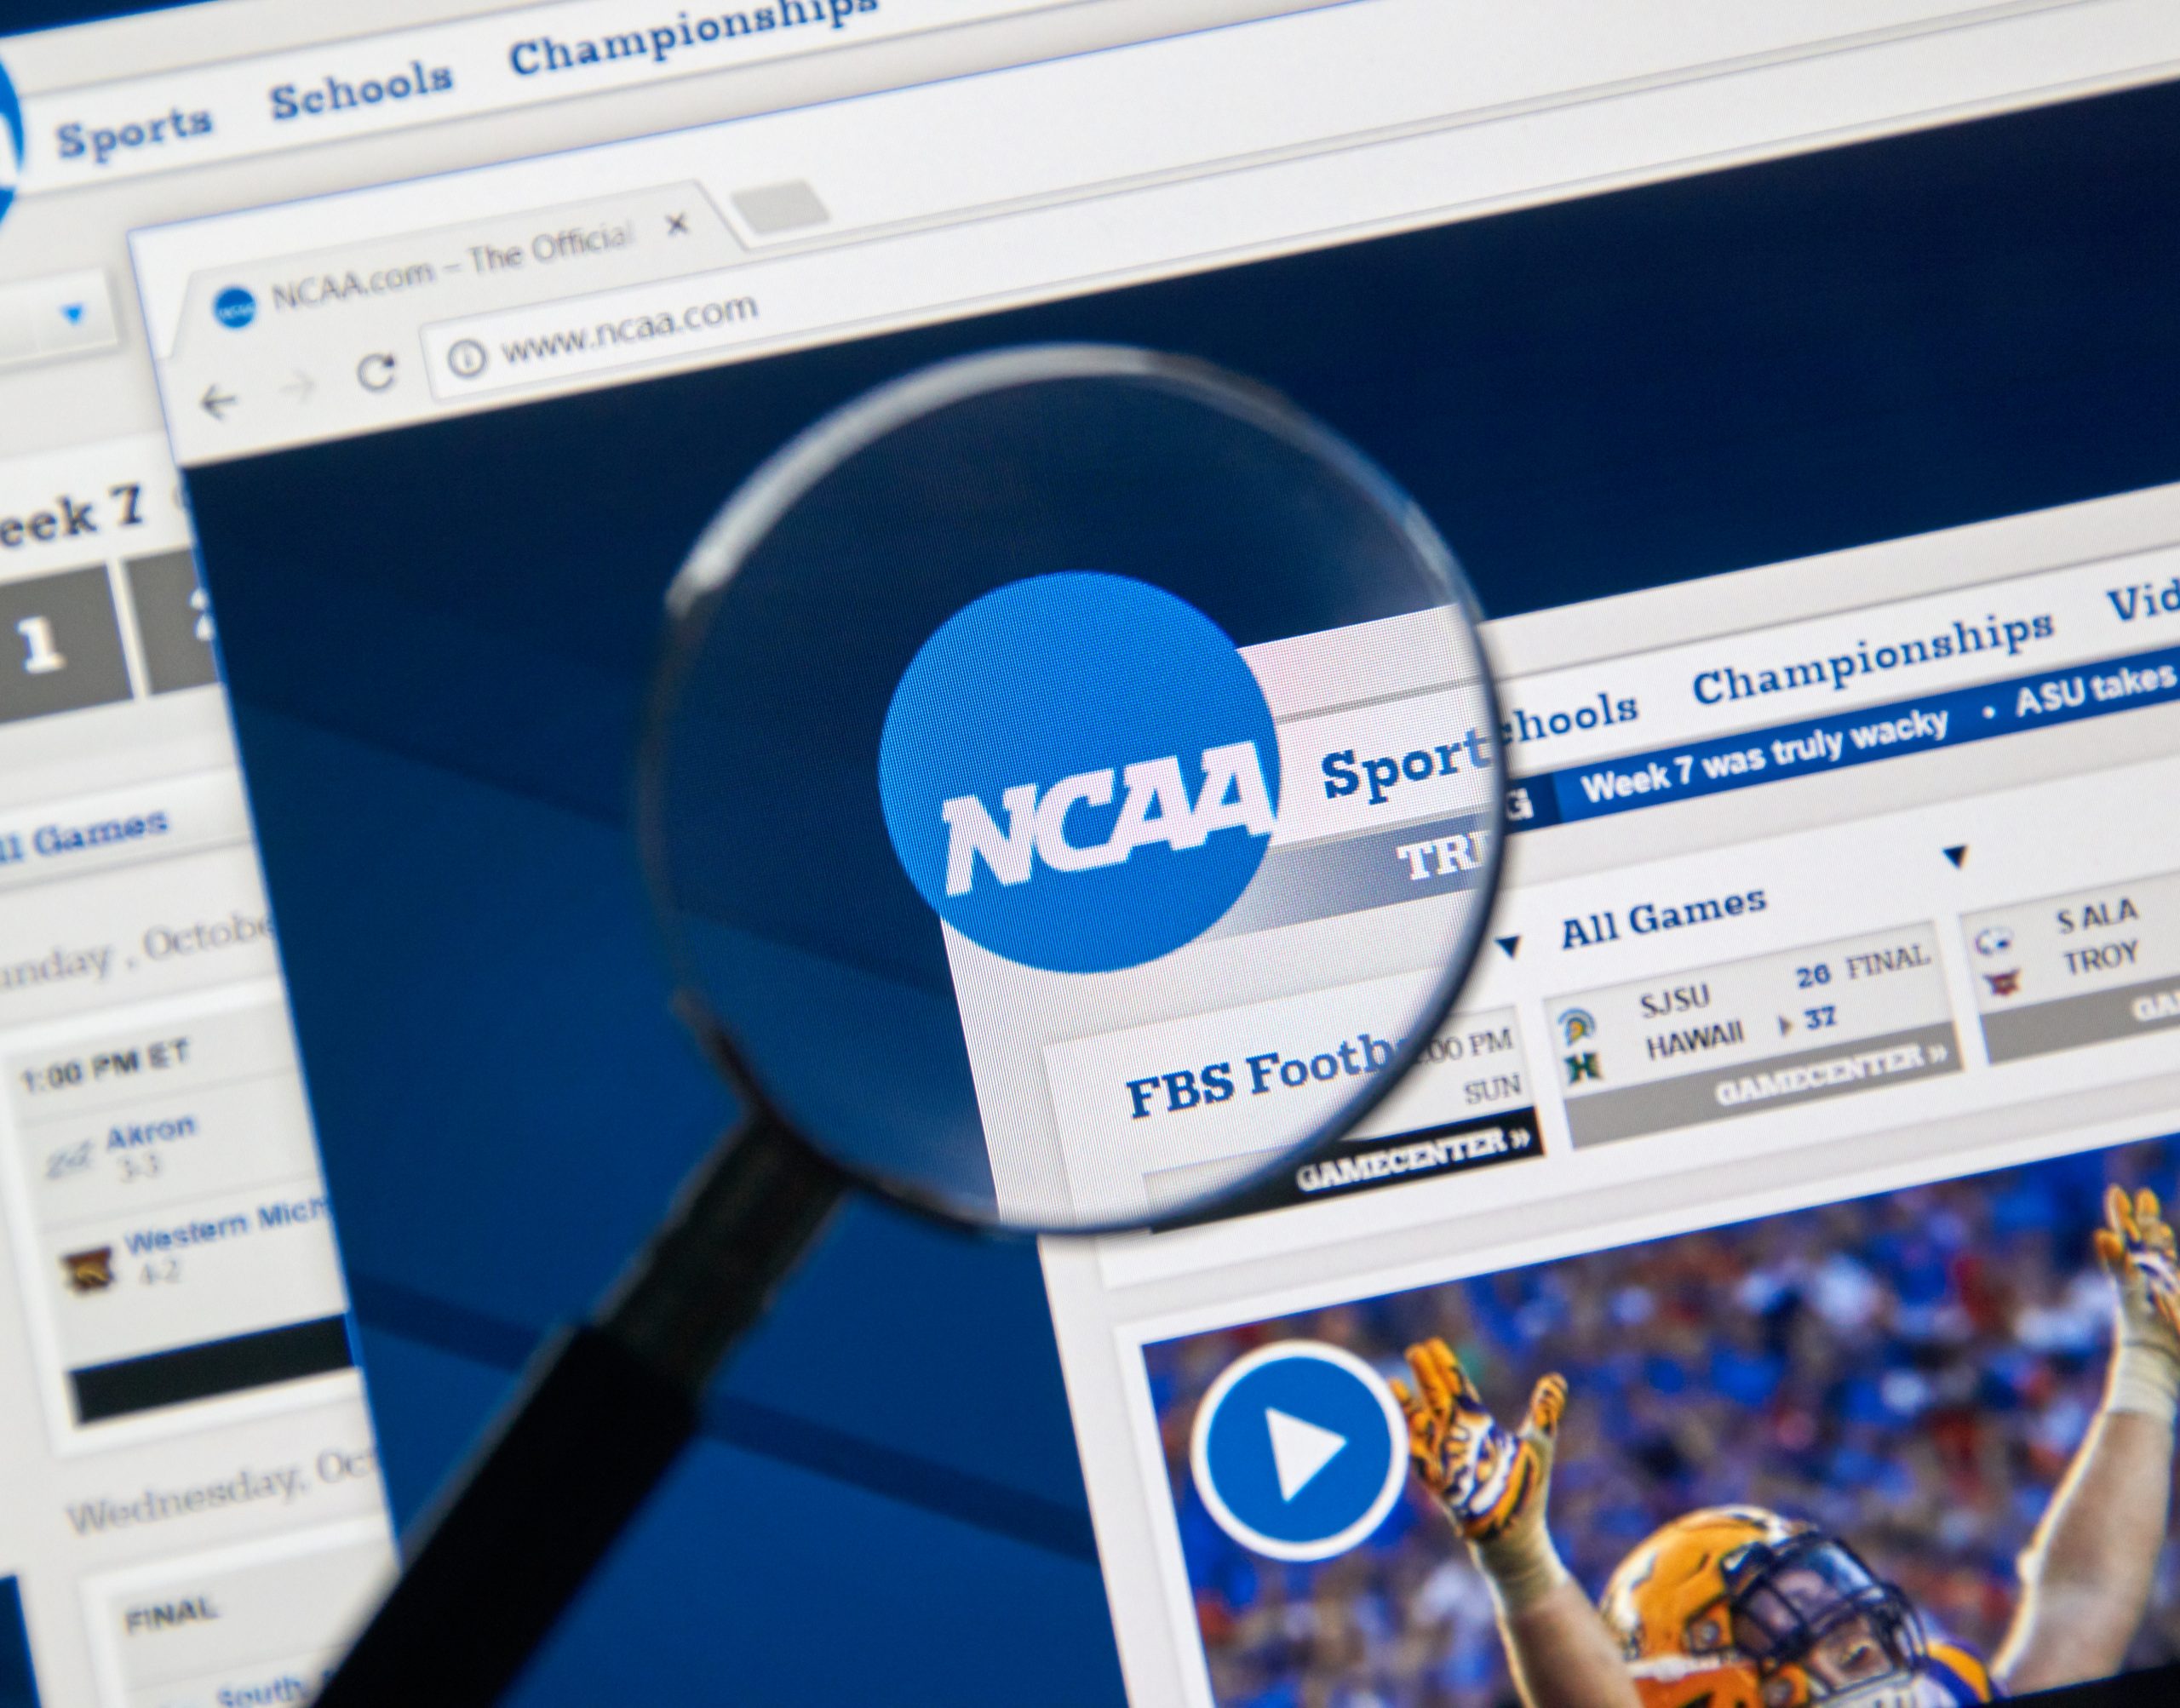 FootballR - NFL - Eine Lupe konzentriert sich auf das NCAA Logo, das auf einem Computerbildschirm angezeigt wird, und hebt in den Browser-Tabs verschiedene Abschnitte wie „Sport“, „Schulen“ und „Meisterschaften“ hervor. Unter dem Logo gibt es einen Zeitplan für Footballspiele und ein Video-Thumbnail mit einem Spieler in orange-weißer Uniform, was die umfangreichen Kommerzialisierungsbemühungen der NCAA hervorhebt. Diese Beschreibung wurde automatisch generiert.